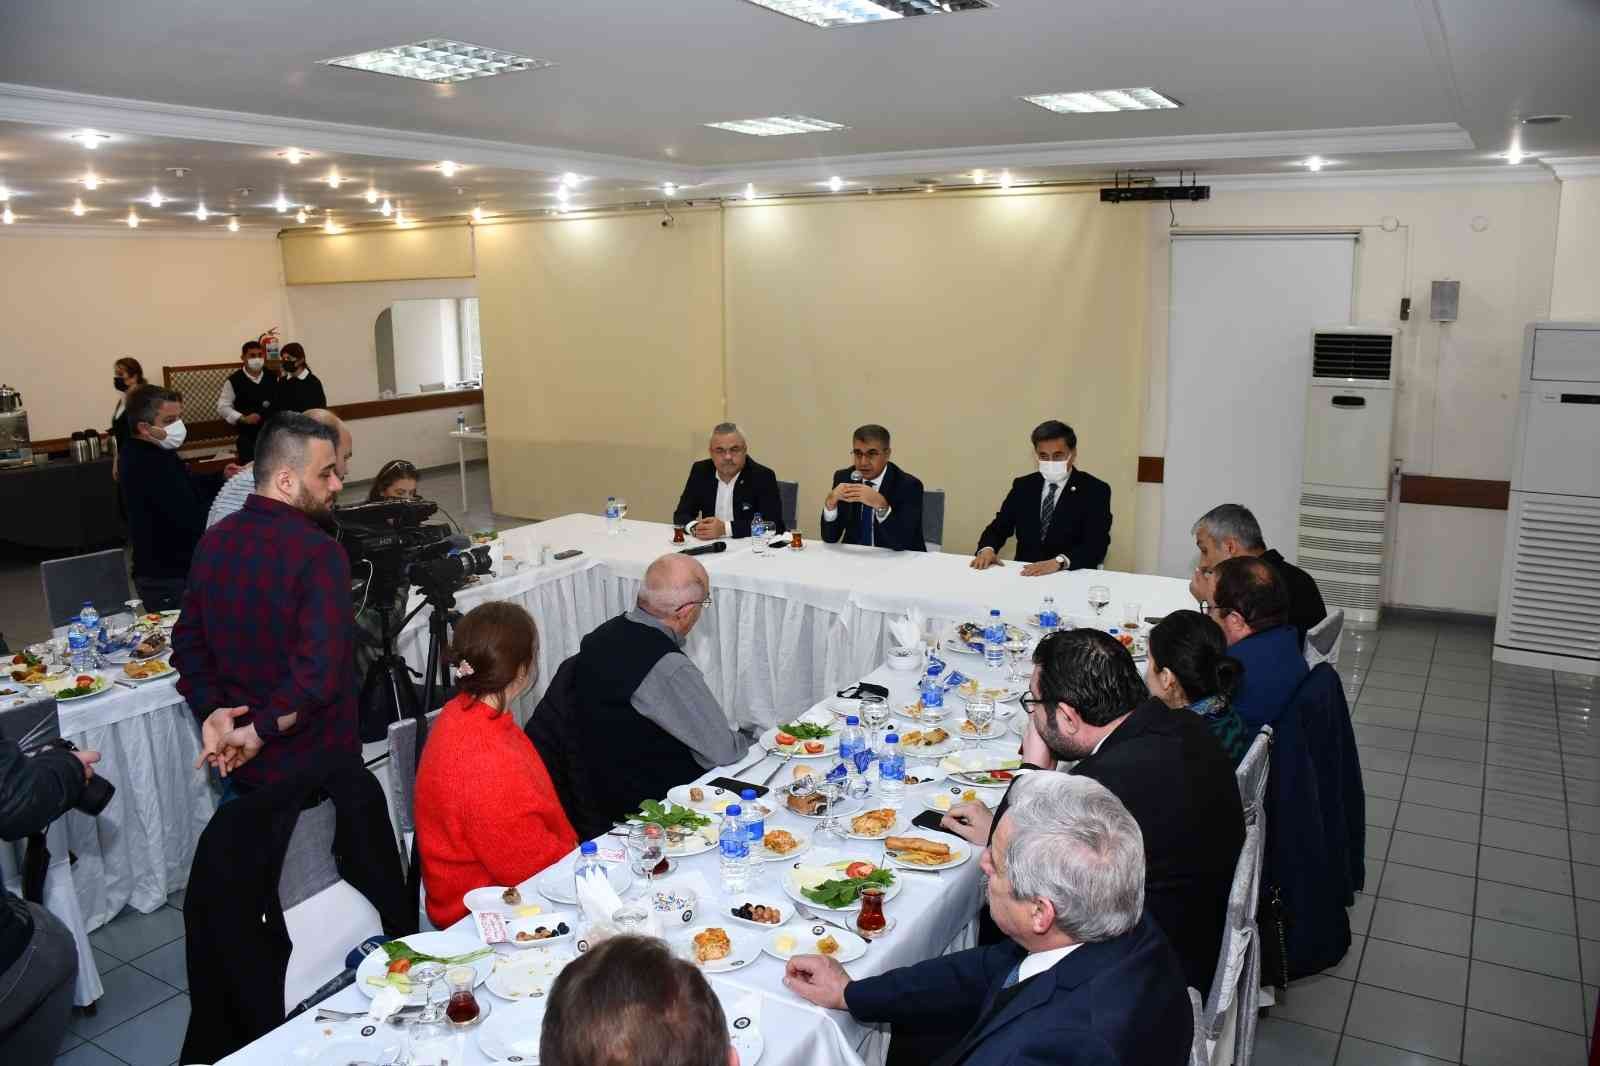 Karabük ve Safranbolu’da Çalışan Gazeteciler Günü programı düzenlendi #karabuk